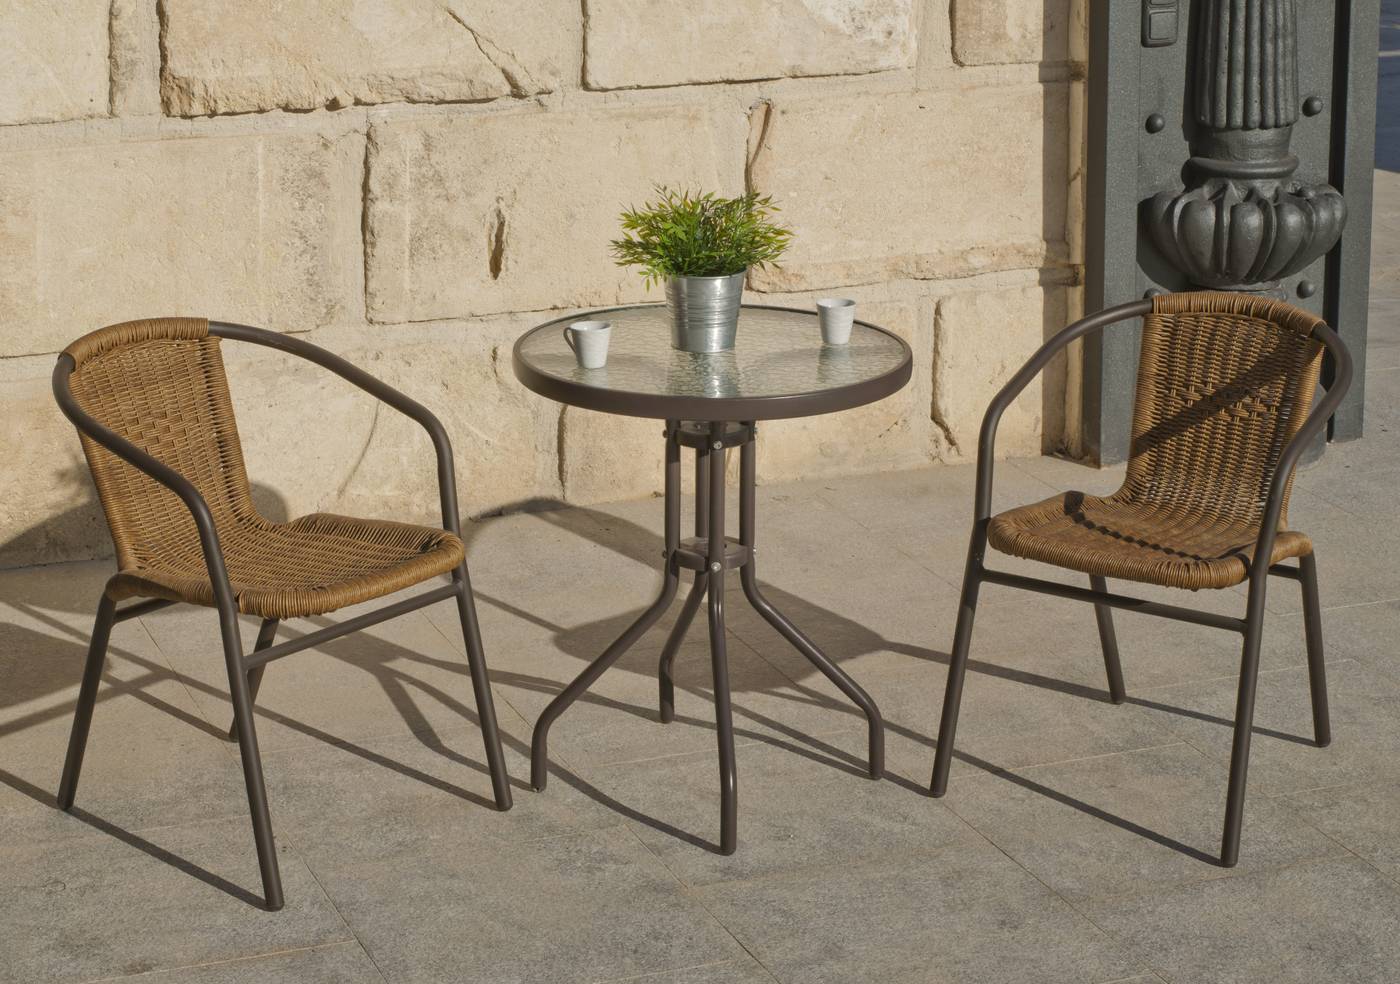 Conjunto para jardín de alumino color bronce: mesa redonda de 60 cm. + 2 sillones de wicker reforzado